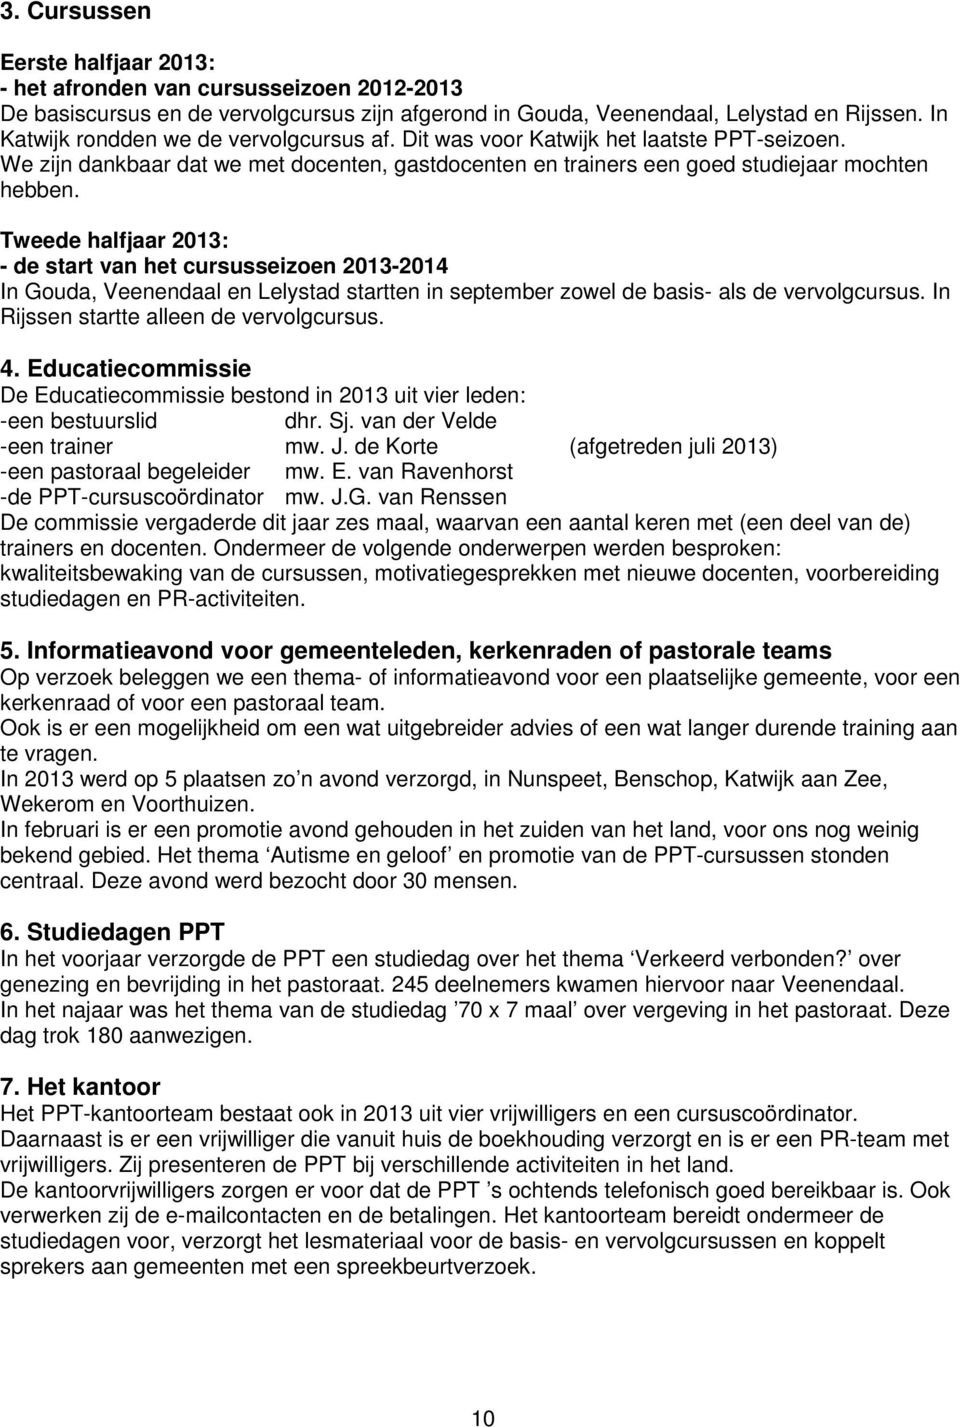 Tweede halfjaar 2013: - de start van het cursusseizoen 2013-2014 In Gouda, Veenendaal en Lelystad startten in september zowel de basis- als de vervolgcursus.